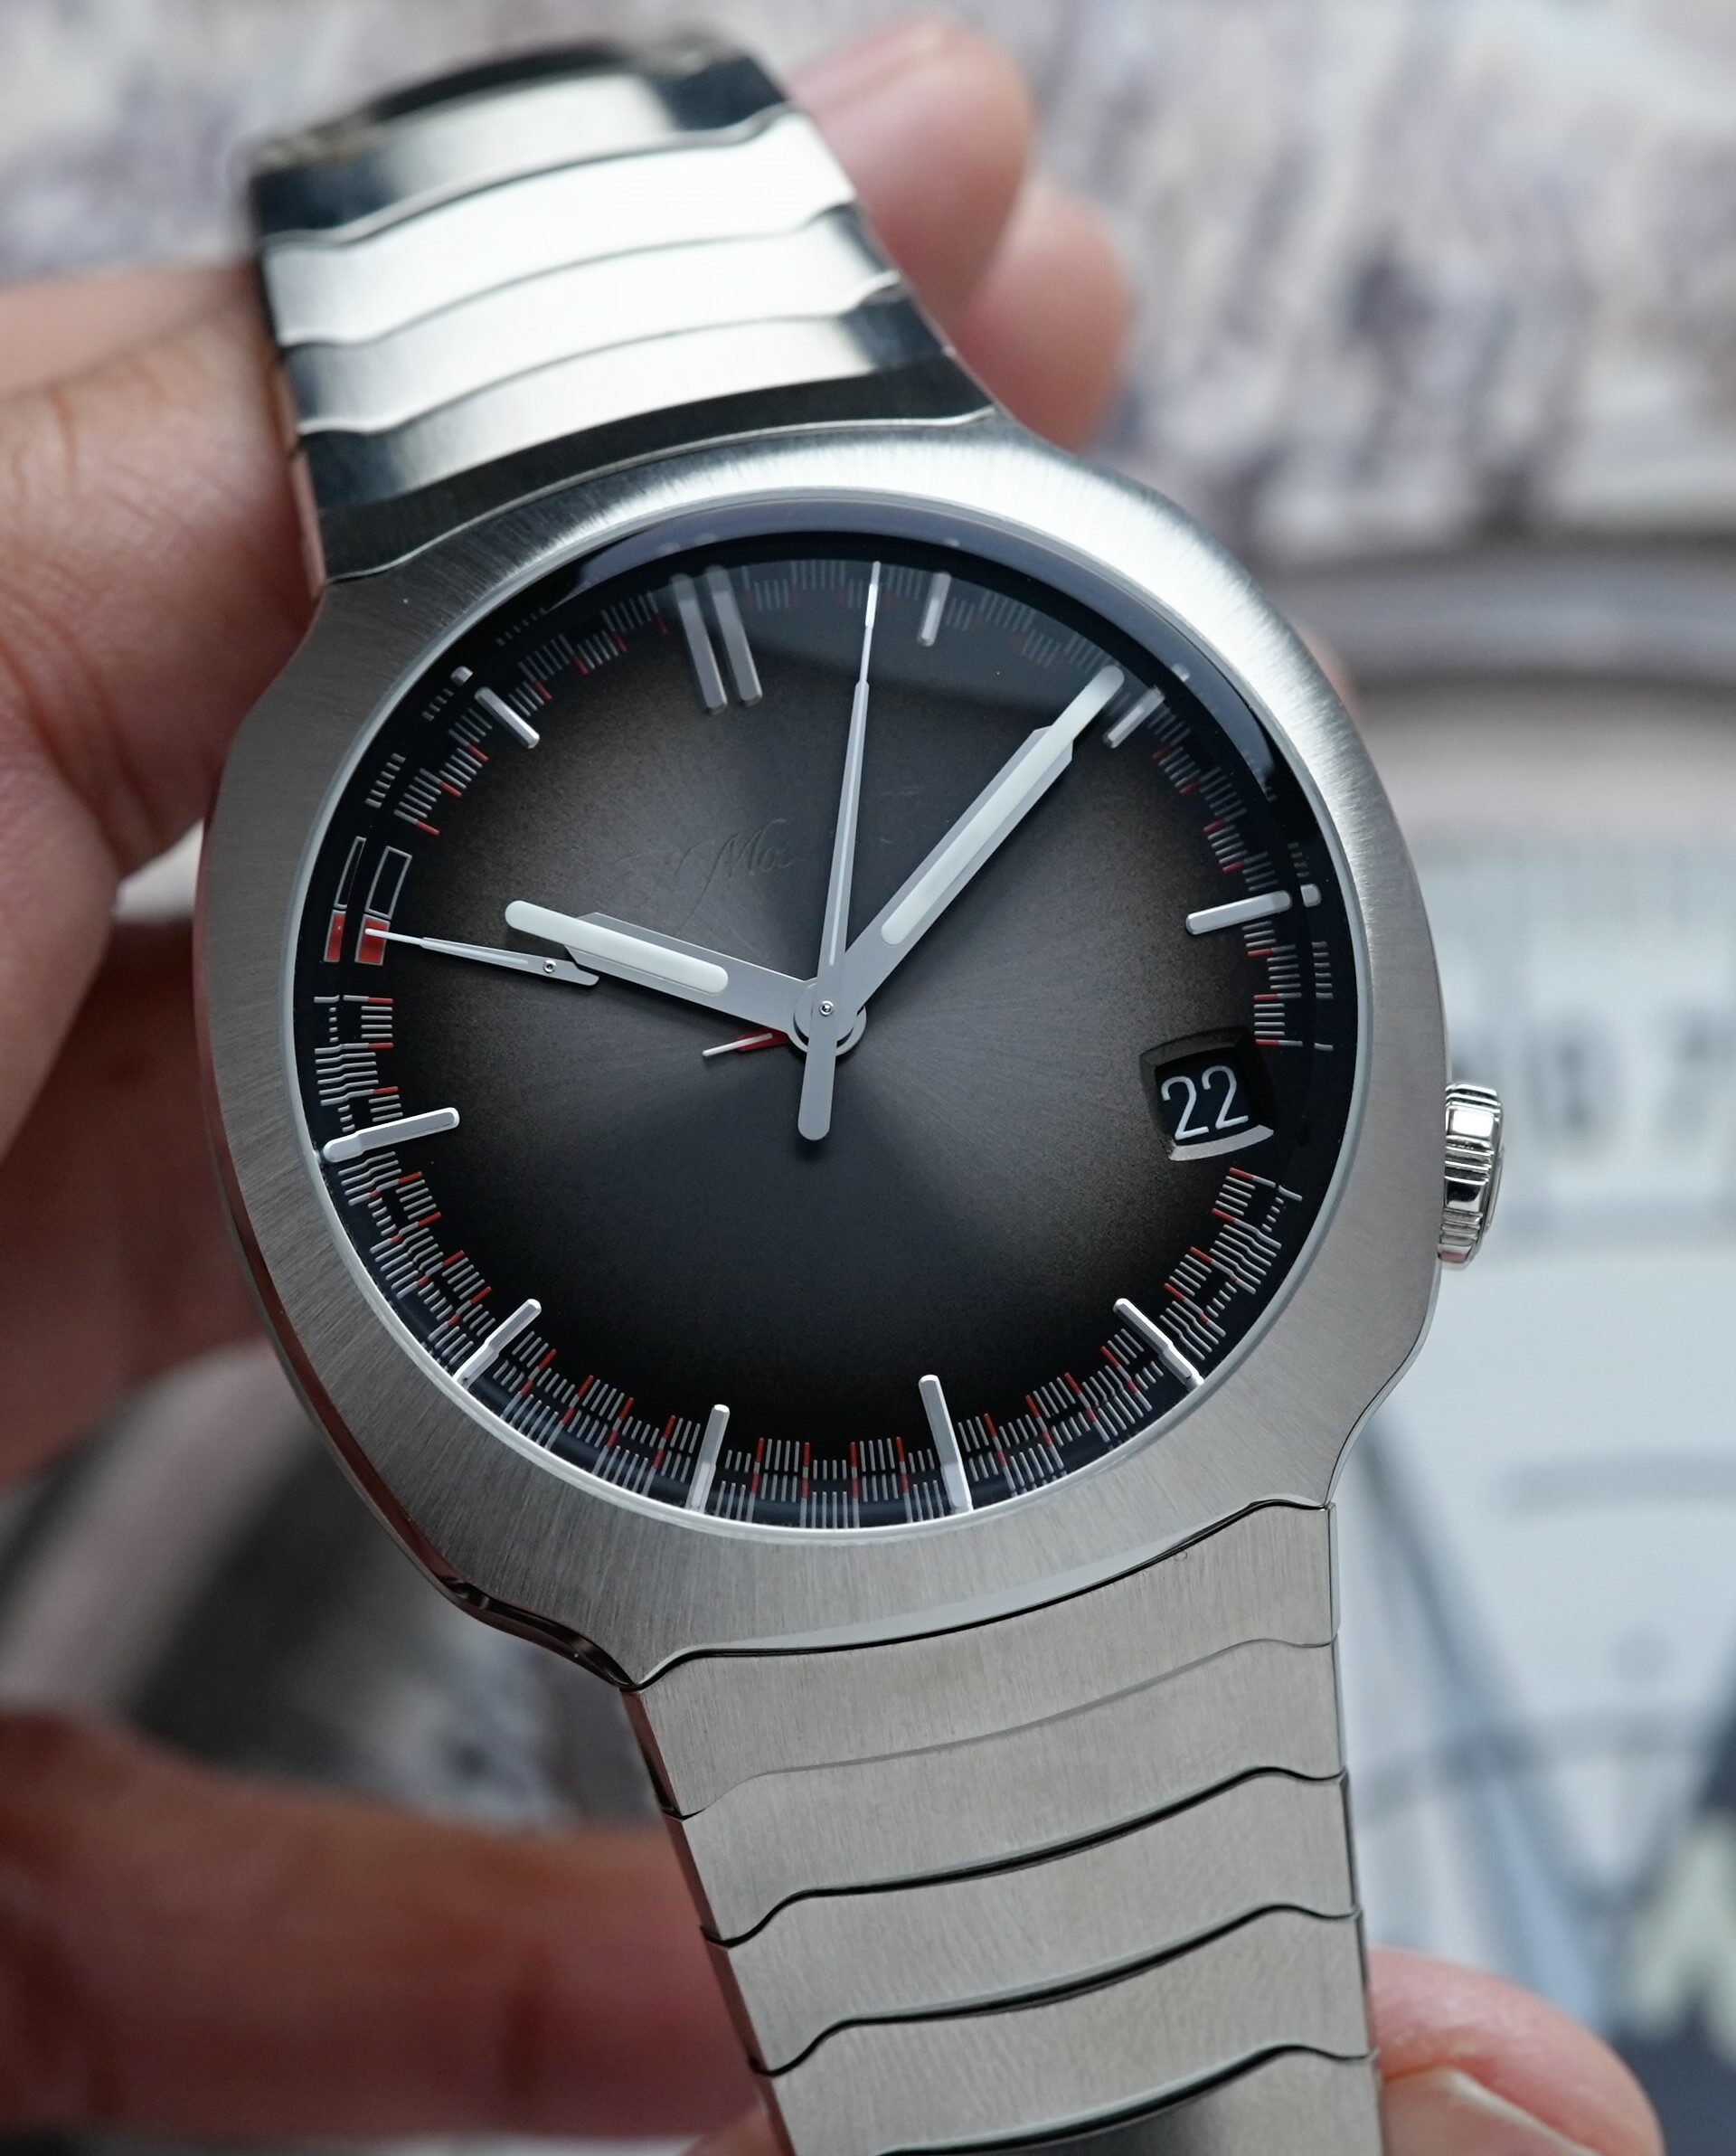 H.Moser & Cie. Streamliner Perpetual Calendar 6812-1200 watch being held in hand.